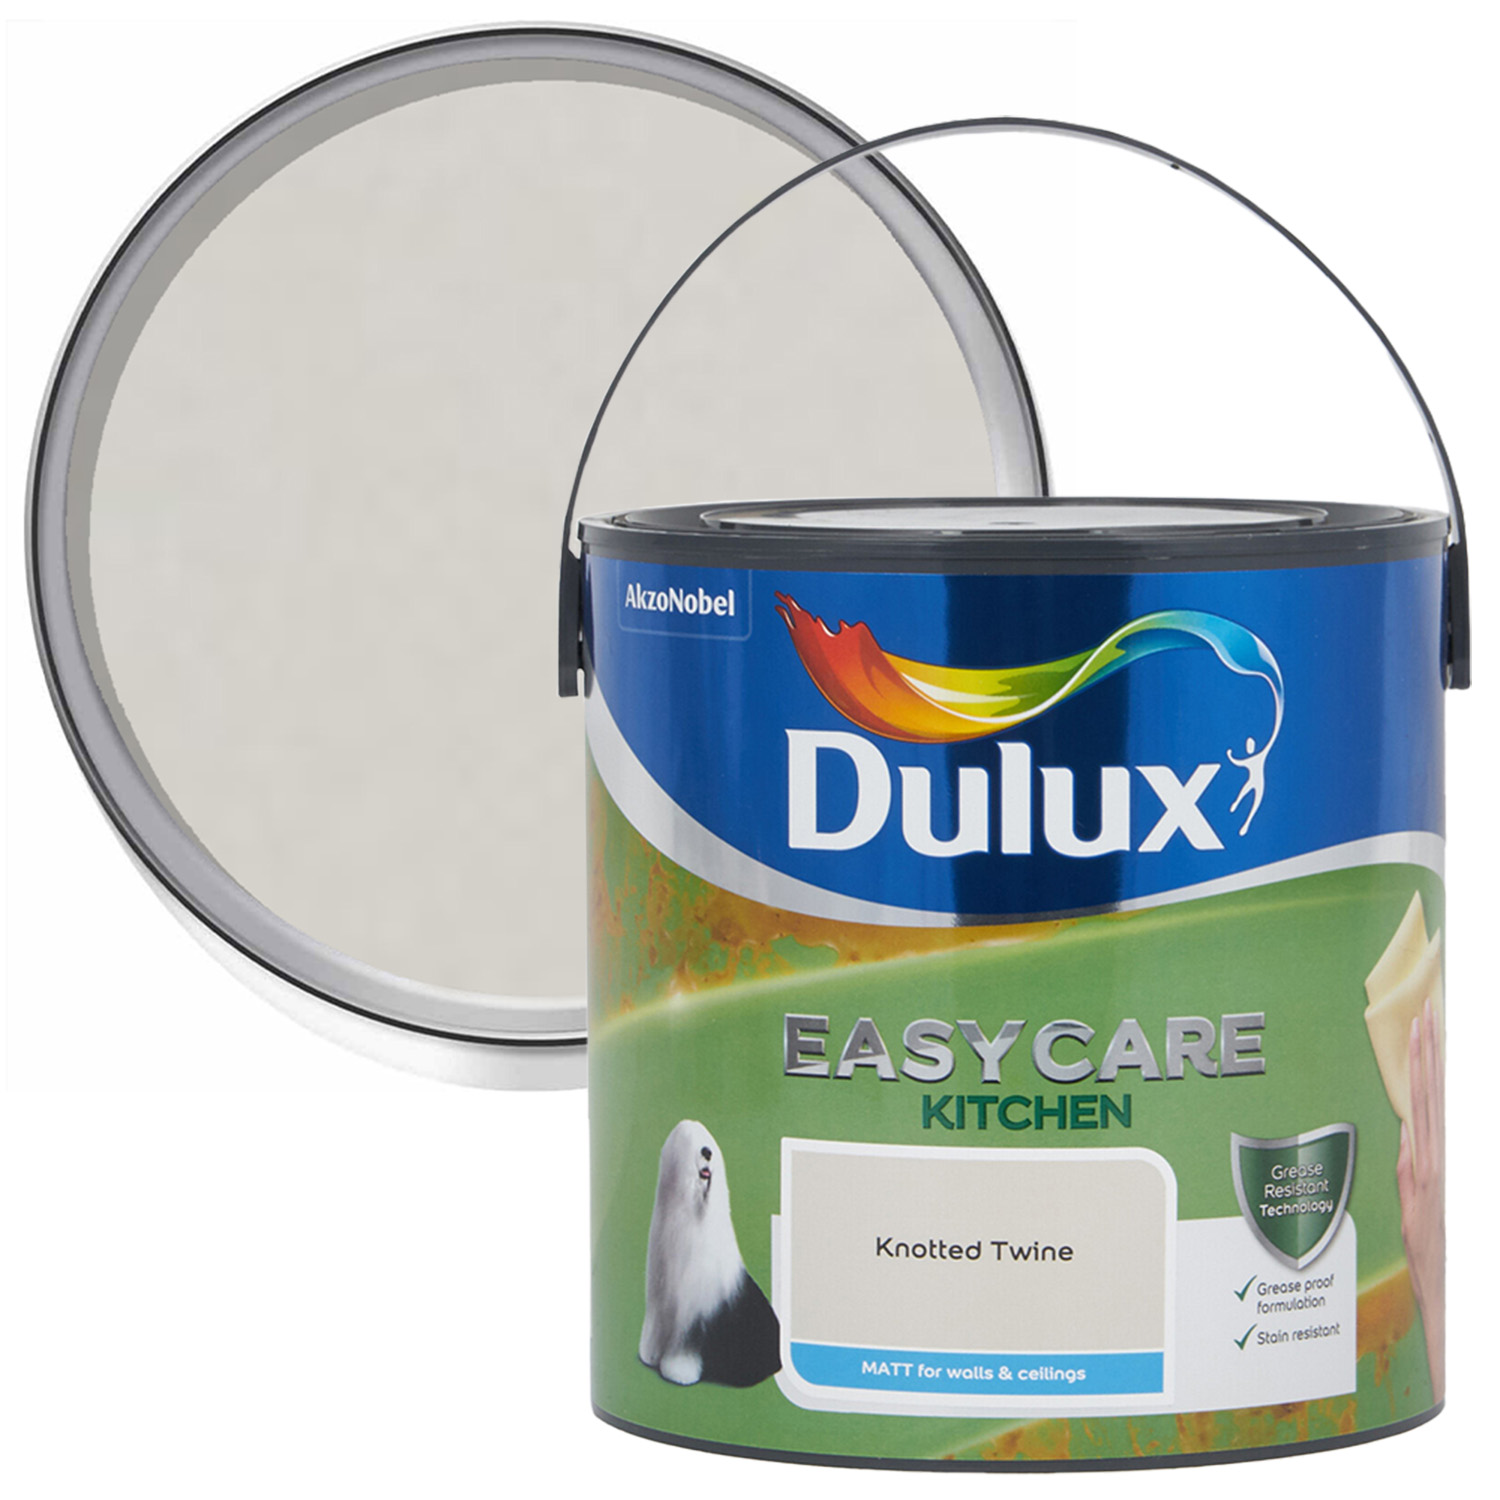 Dulux Easycare Kitchen Knotted Twine Matt Emulsion Paint 2.5L Image 1